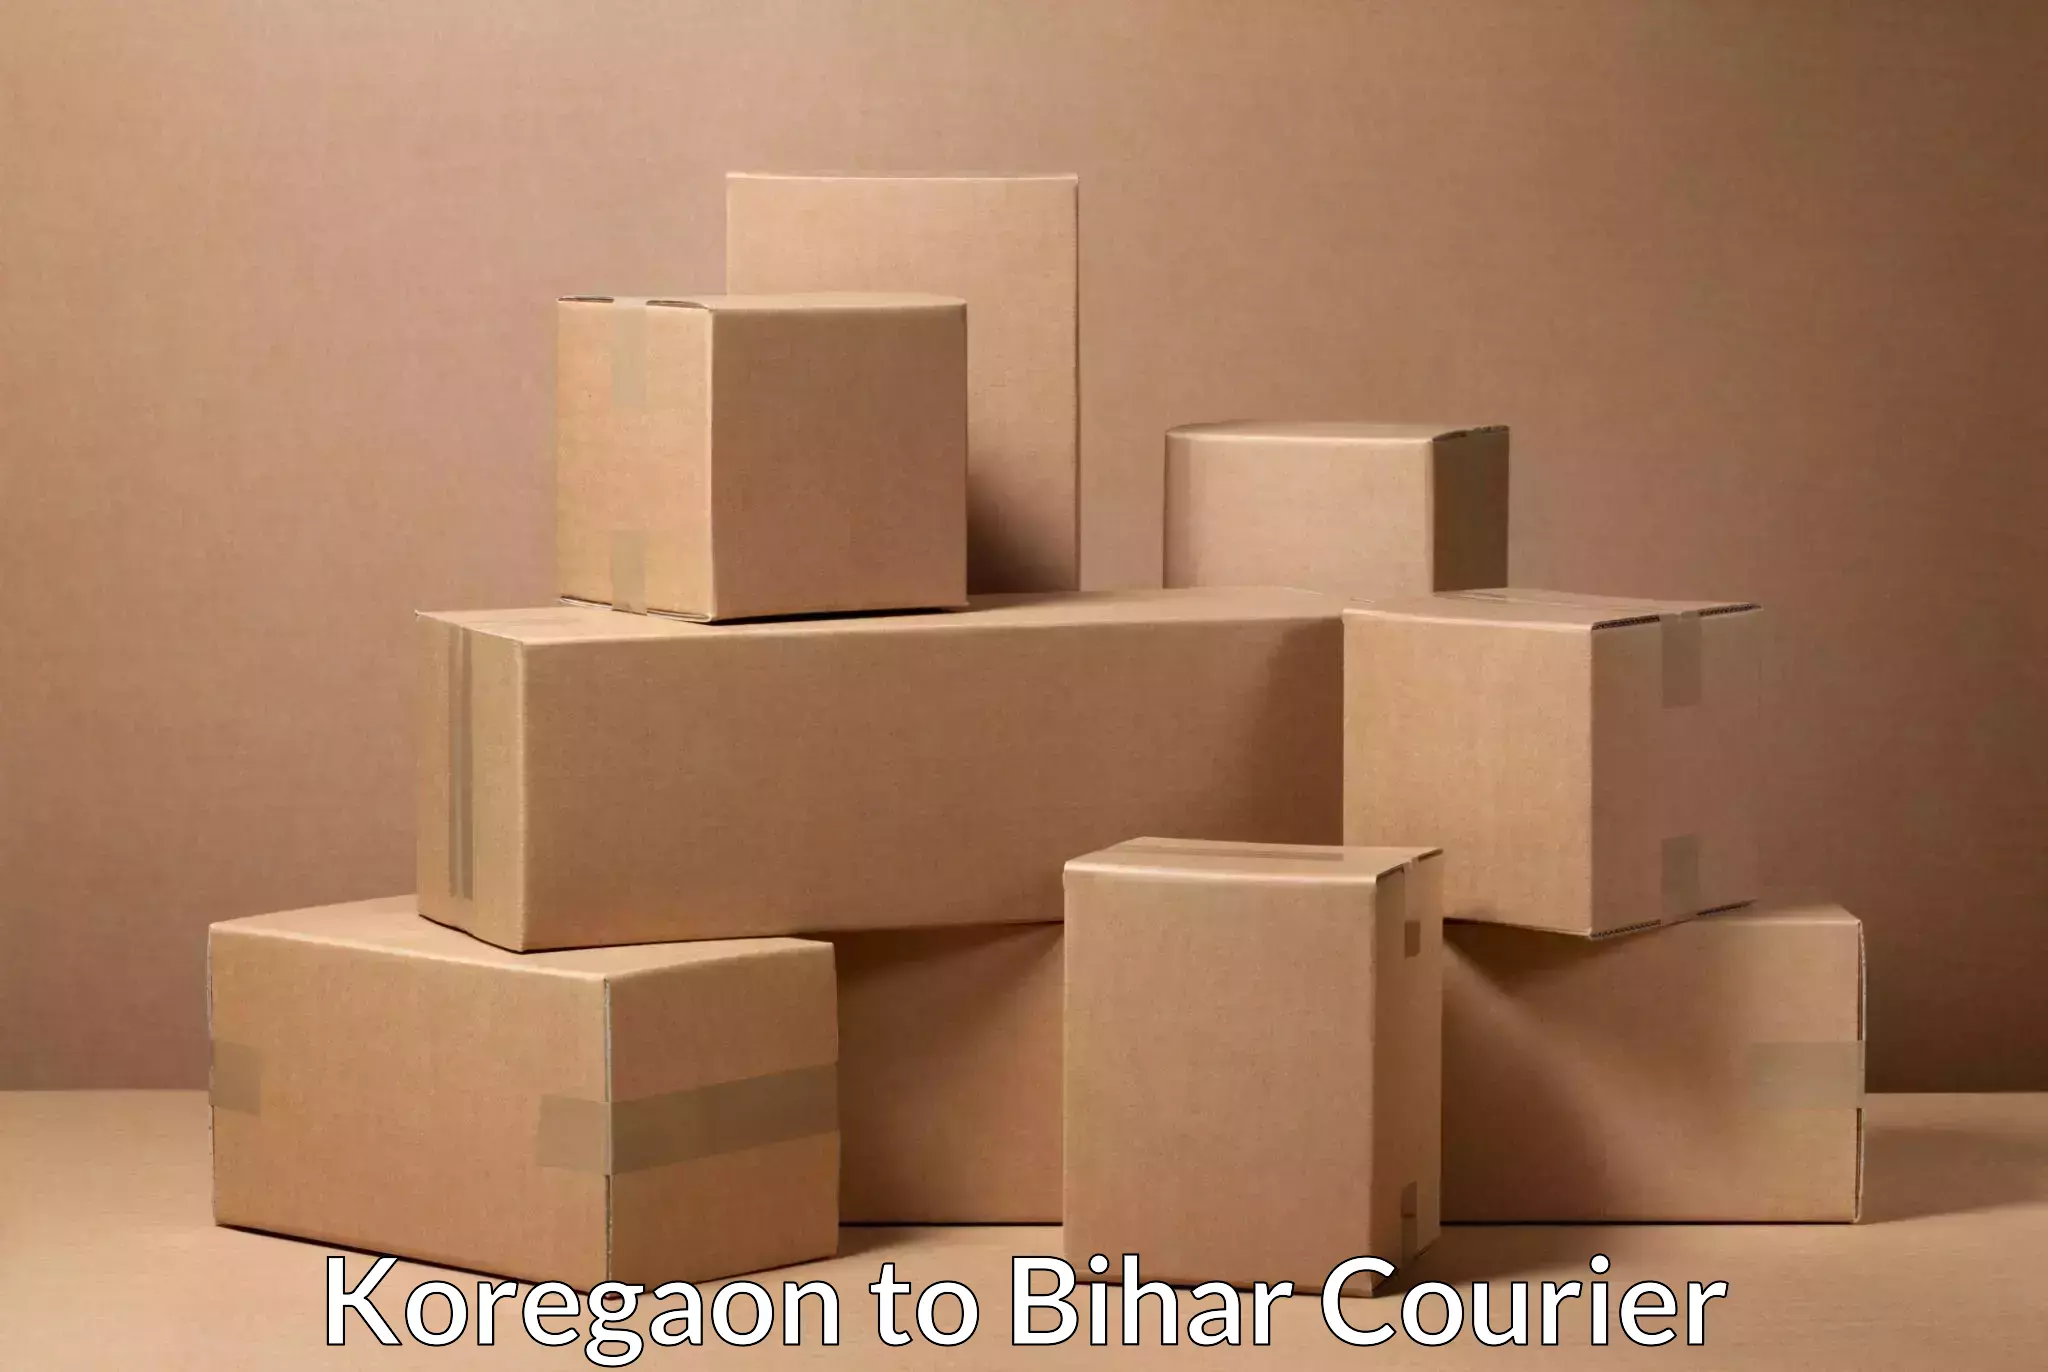 Lightweight parcel options in Koregaon to Bihar